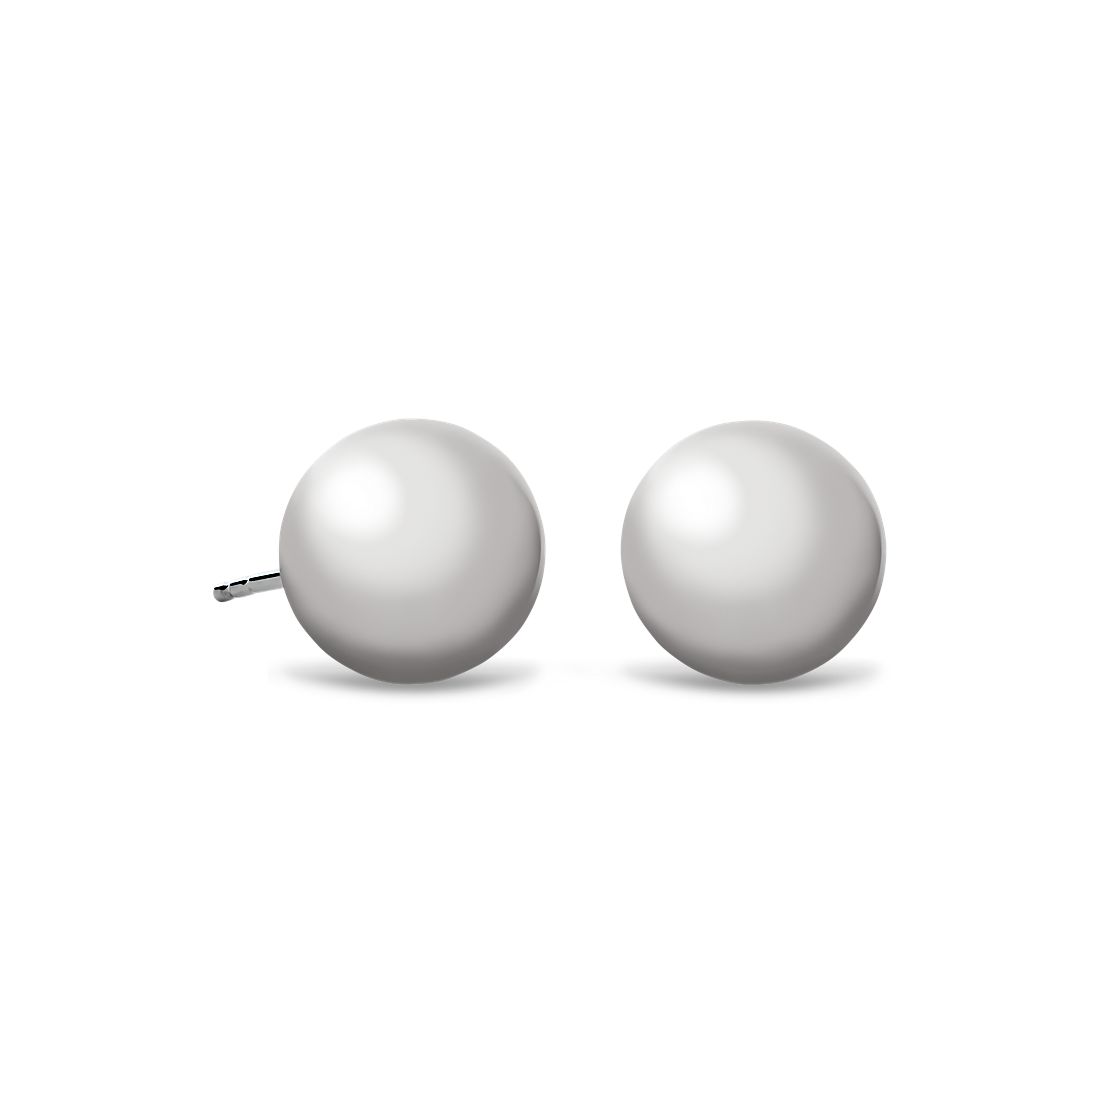 Ball Stud Earrings in 14k White Gold (10mm)